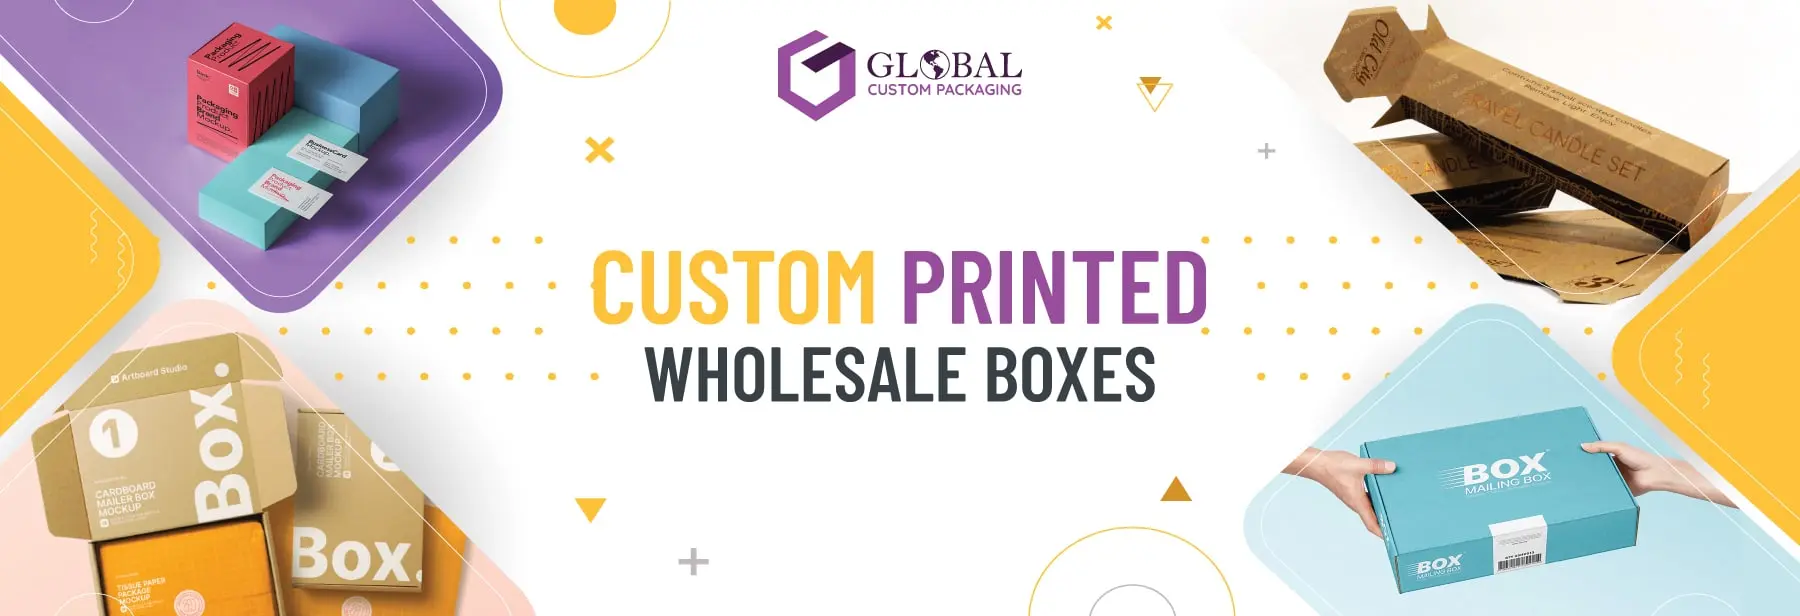 Global Custom Packaging Blog  Packaging News, Packaging Blog